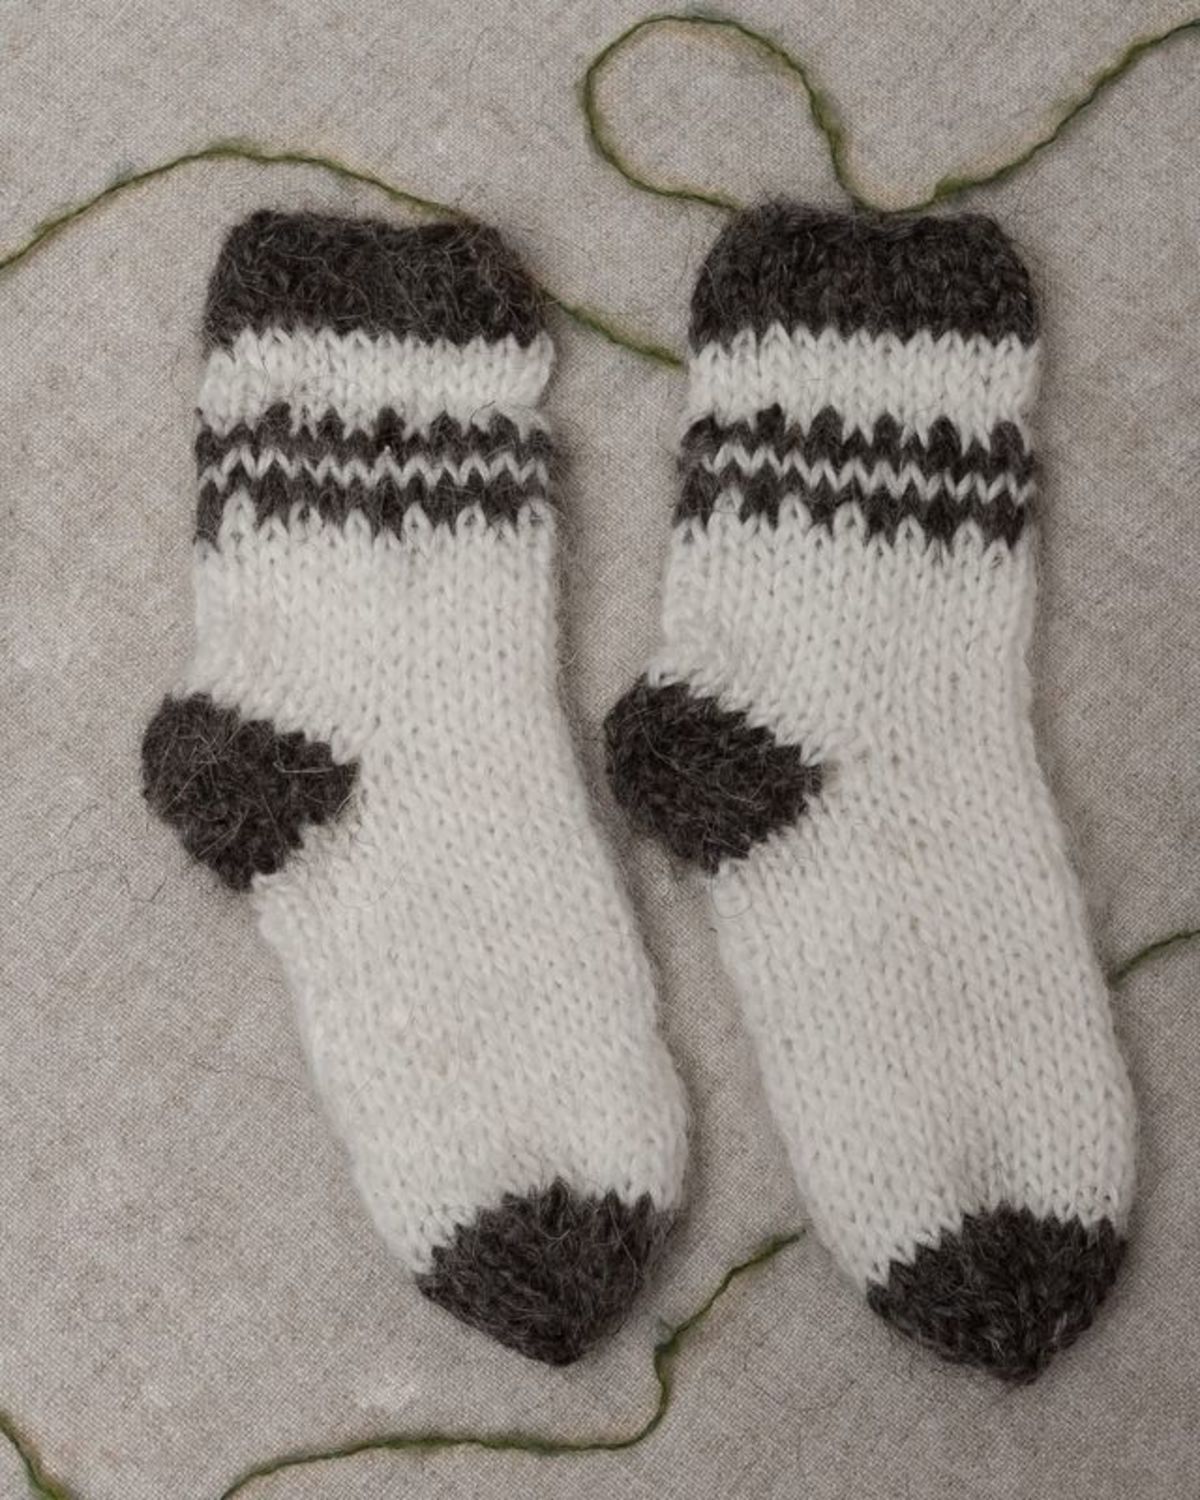 Children's socks made of wool photo 1